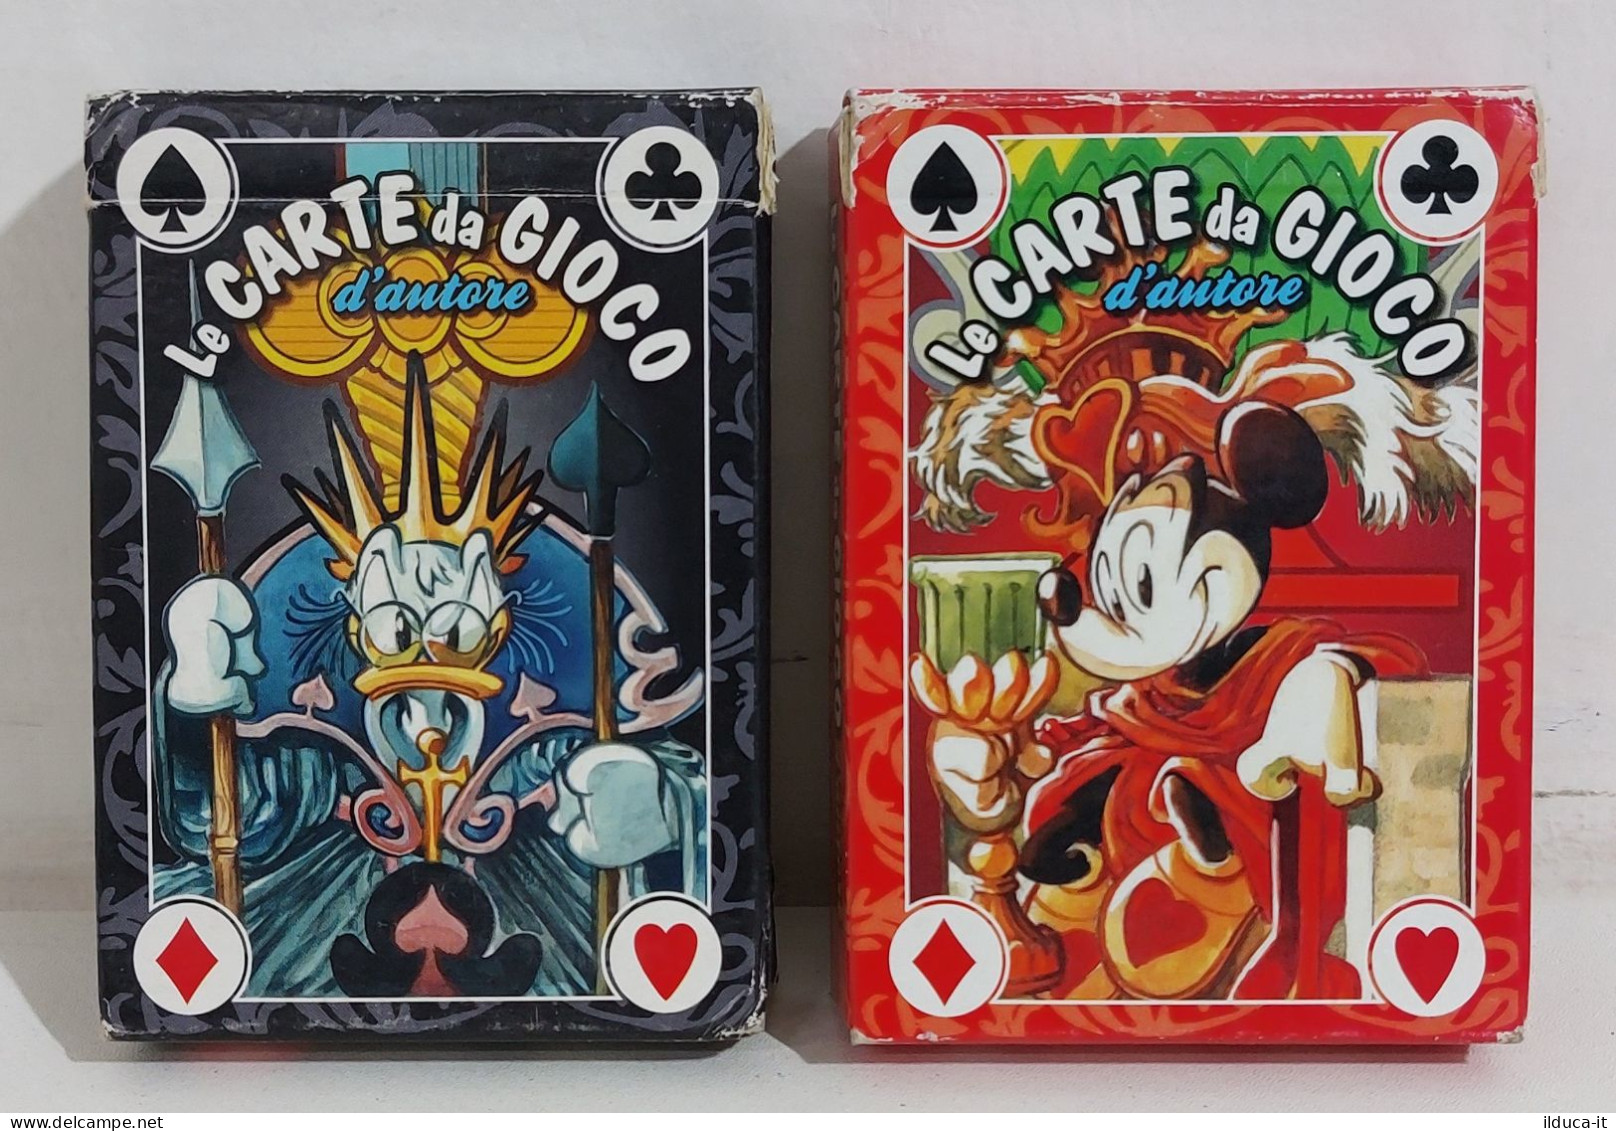 61488 Carte Disney - Le Carte Da Gioco D'autore 2 Mazzi - Fabio Celoni - Playing Cards (classic)